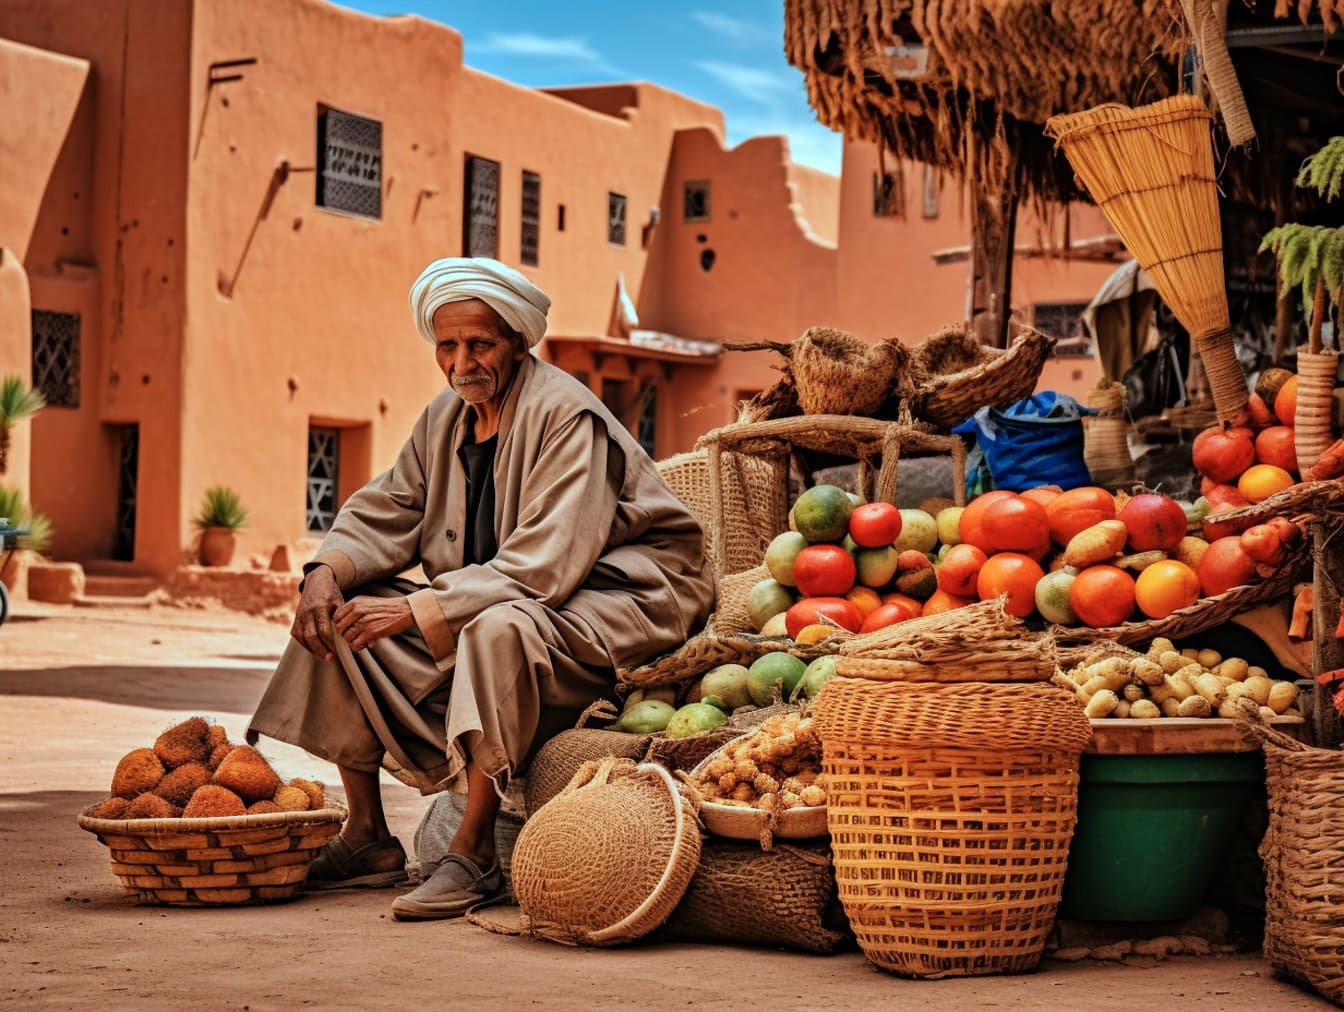 Bejaarde in traditionele Arabische kleren zittend naast een stapel fruit op straatmarkt in het oude deel van stad in Marokko